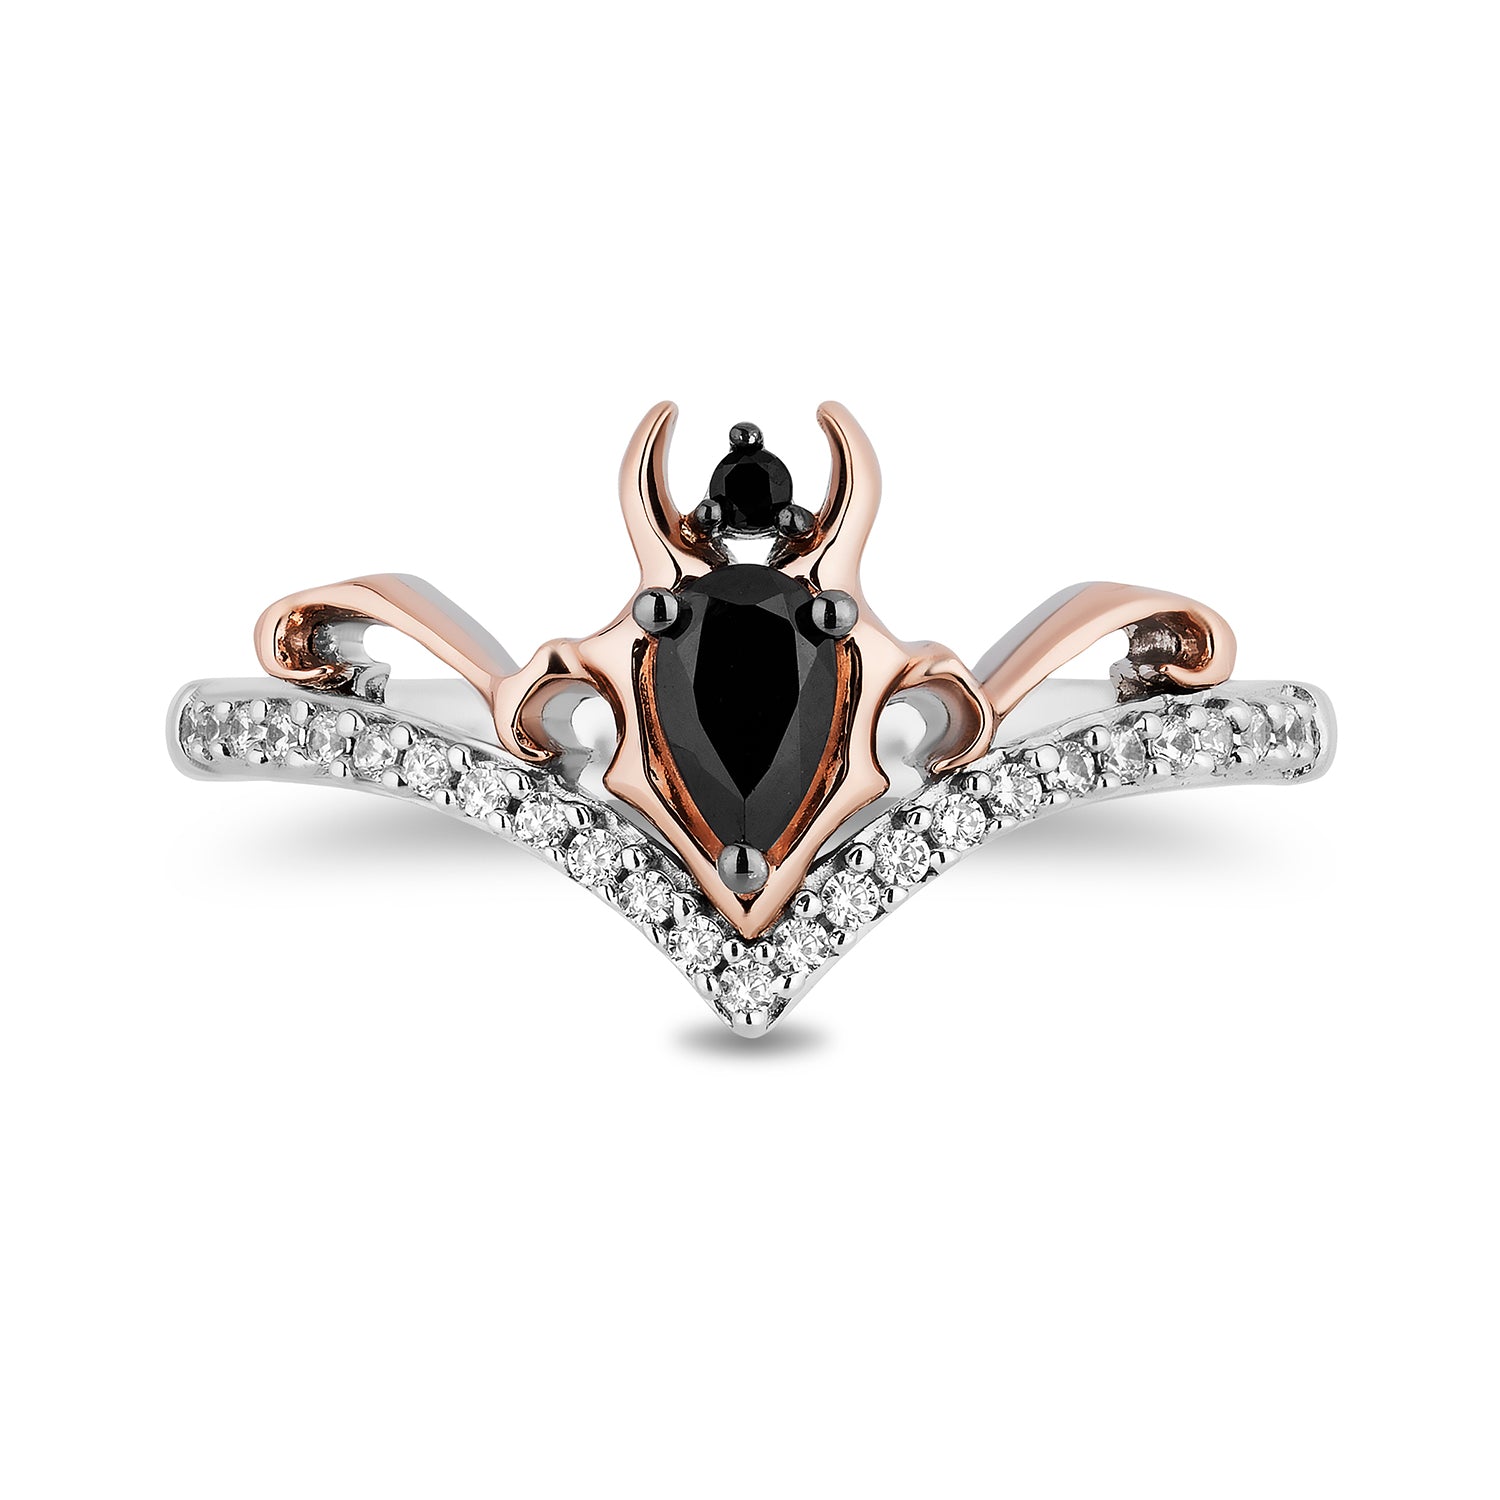 Disney Maleficent Inspired Diamond Ring 10K Rose Gold 1/6 CTTW